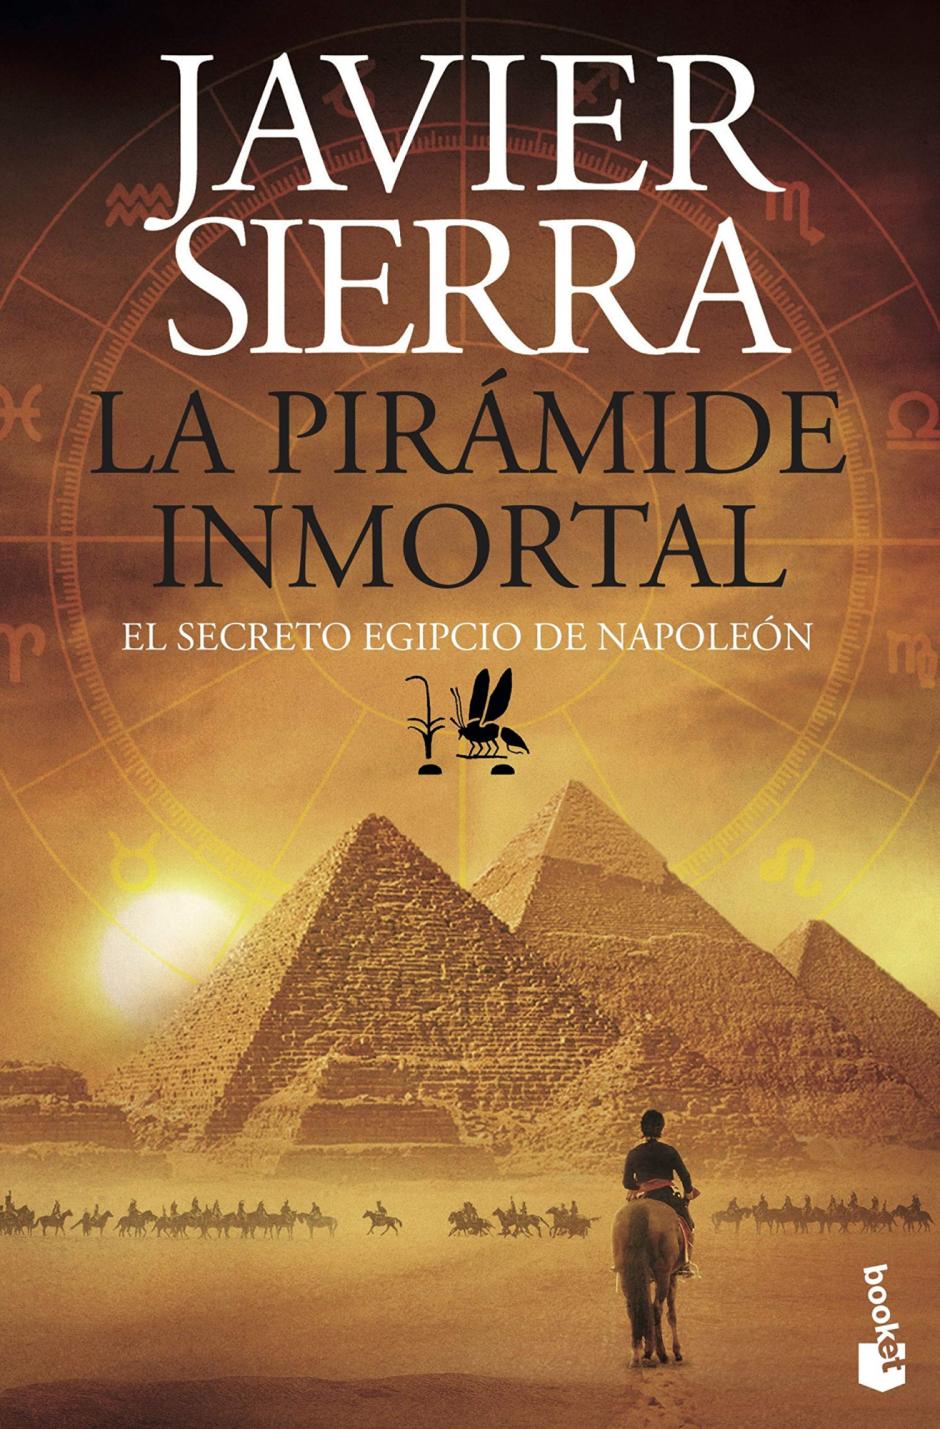 El libro de Javier Sierra 'La pirámide inmortal'